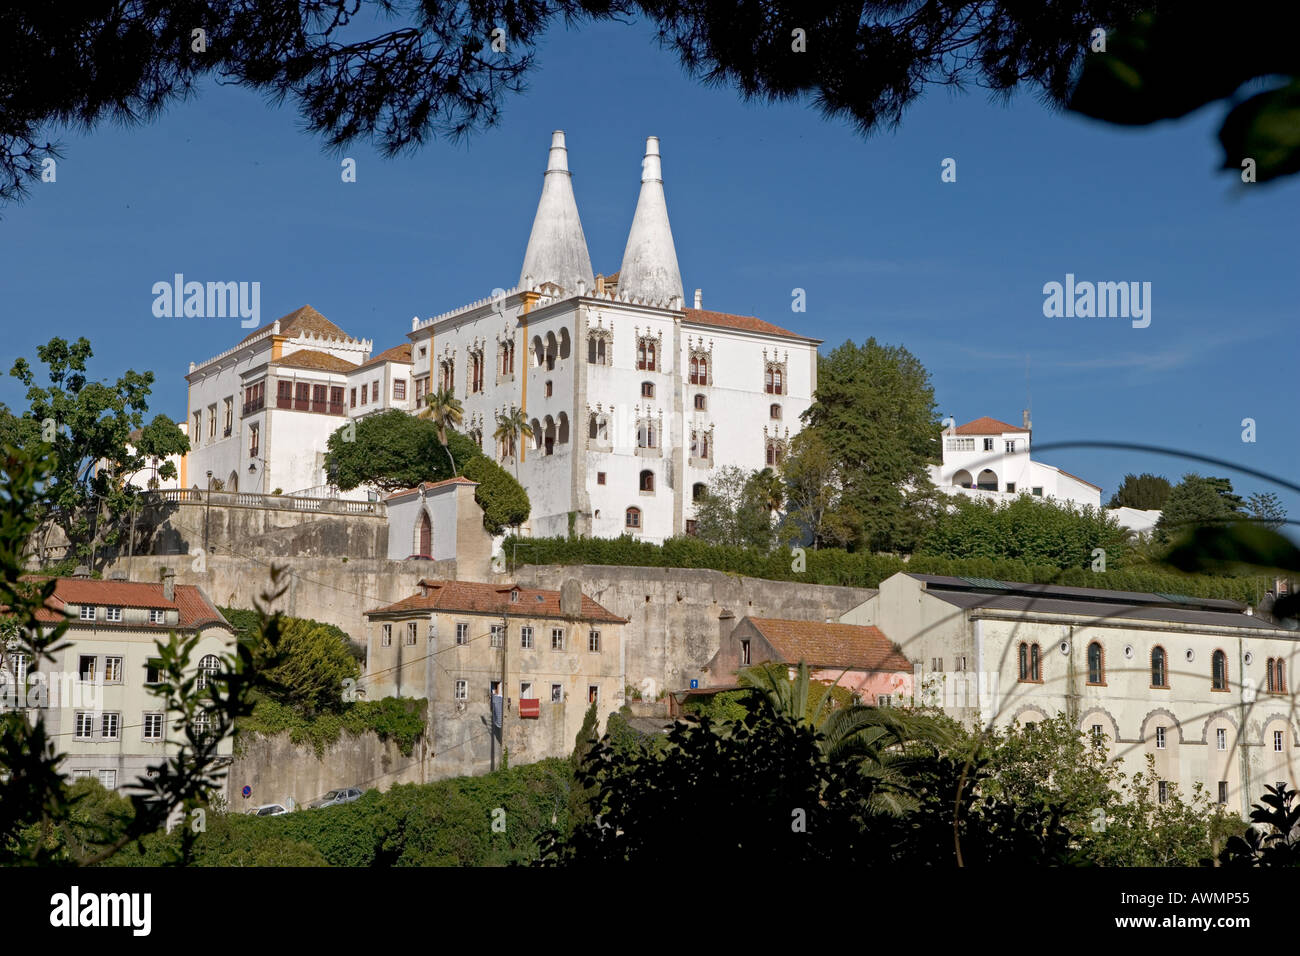 Le Palais National de Sintra Portugal avec ses deux tours coniques. Banque D'Images